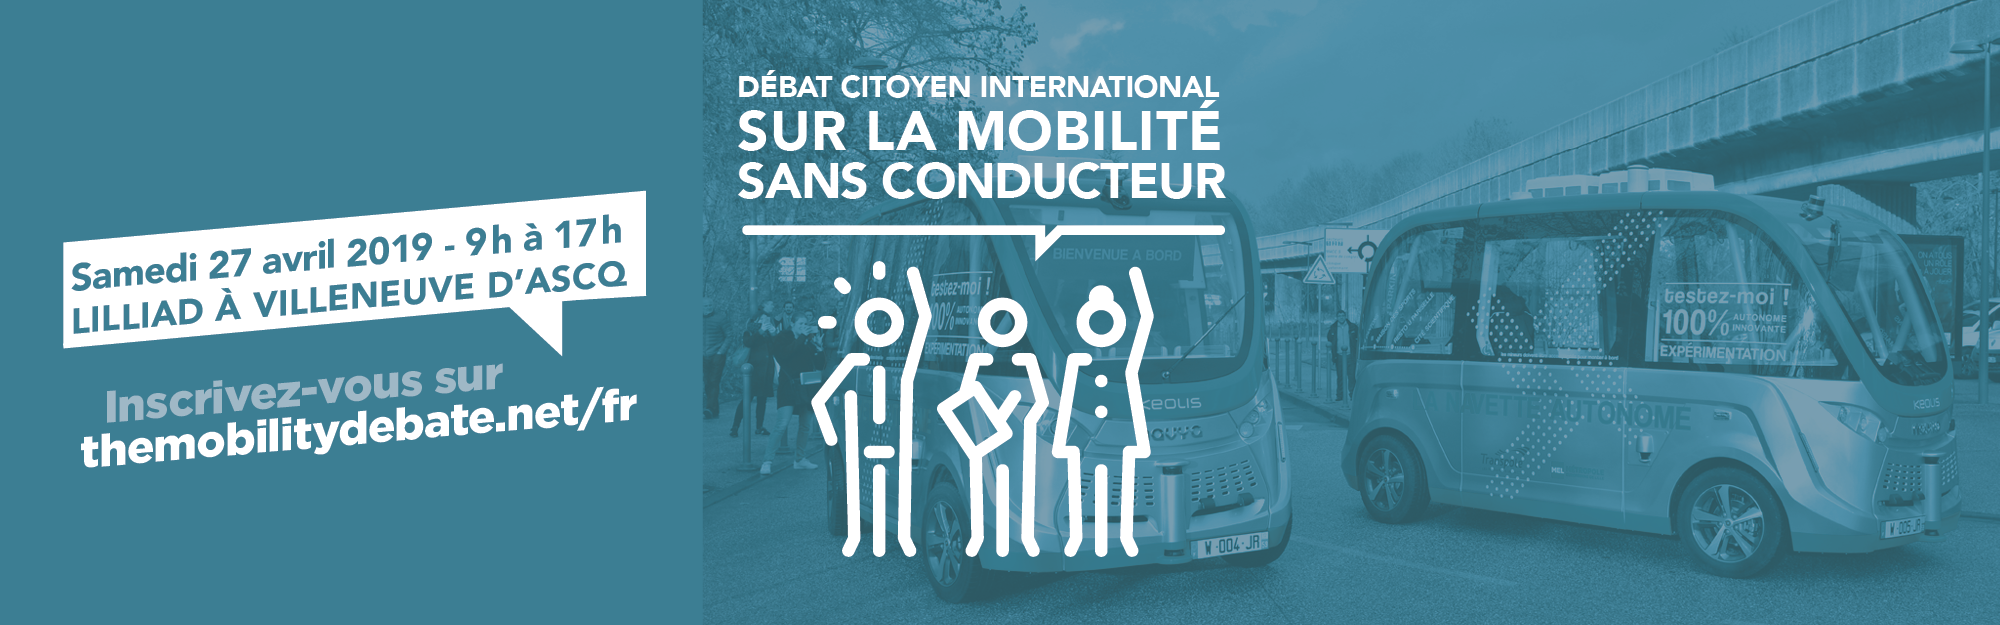 Mobilité sans conducteur : participez au débat